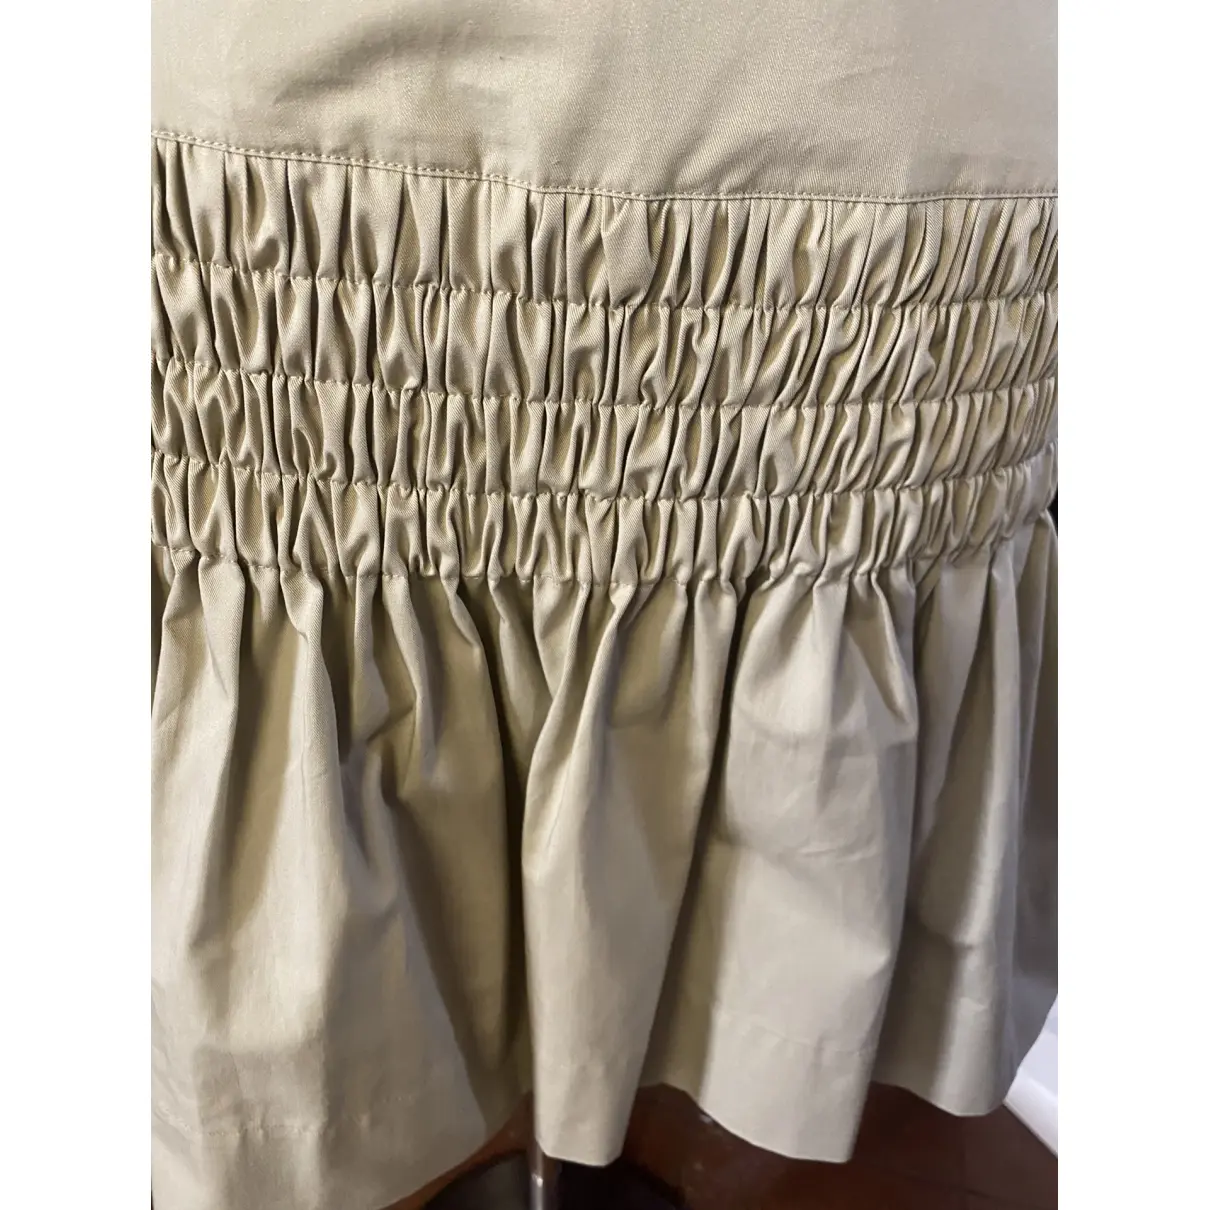 Luxury Isabel Marant Etoile Skirts Women